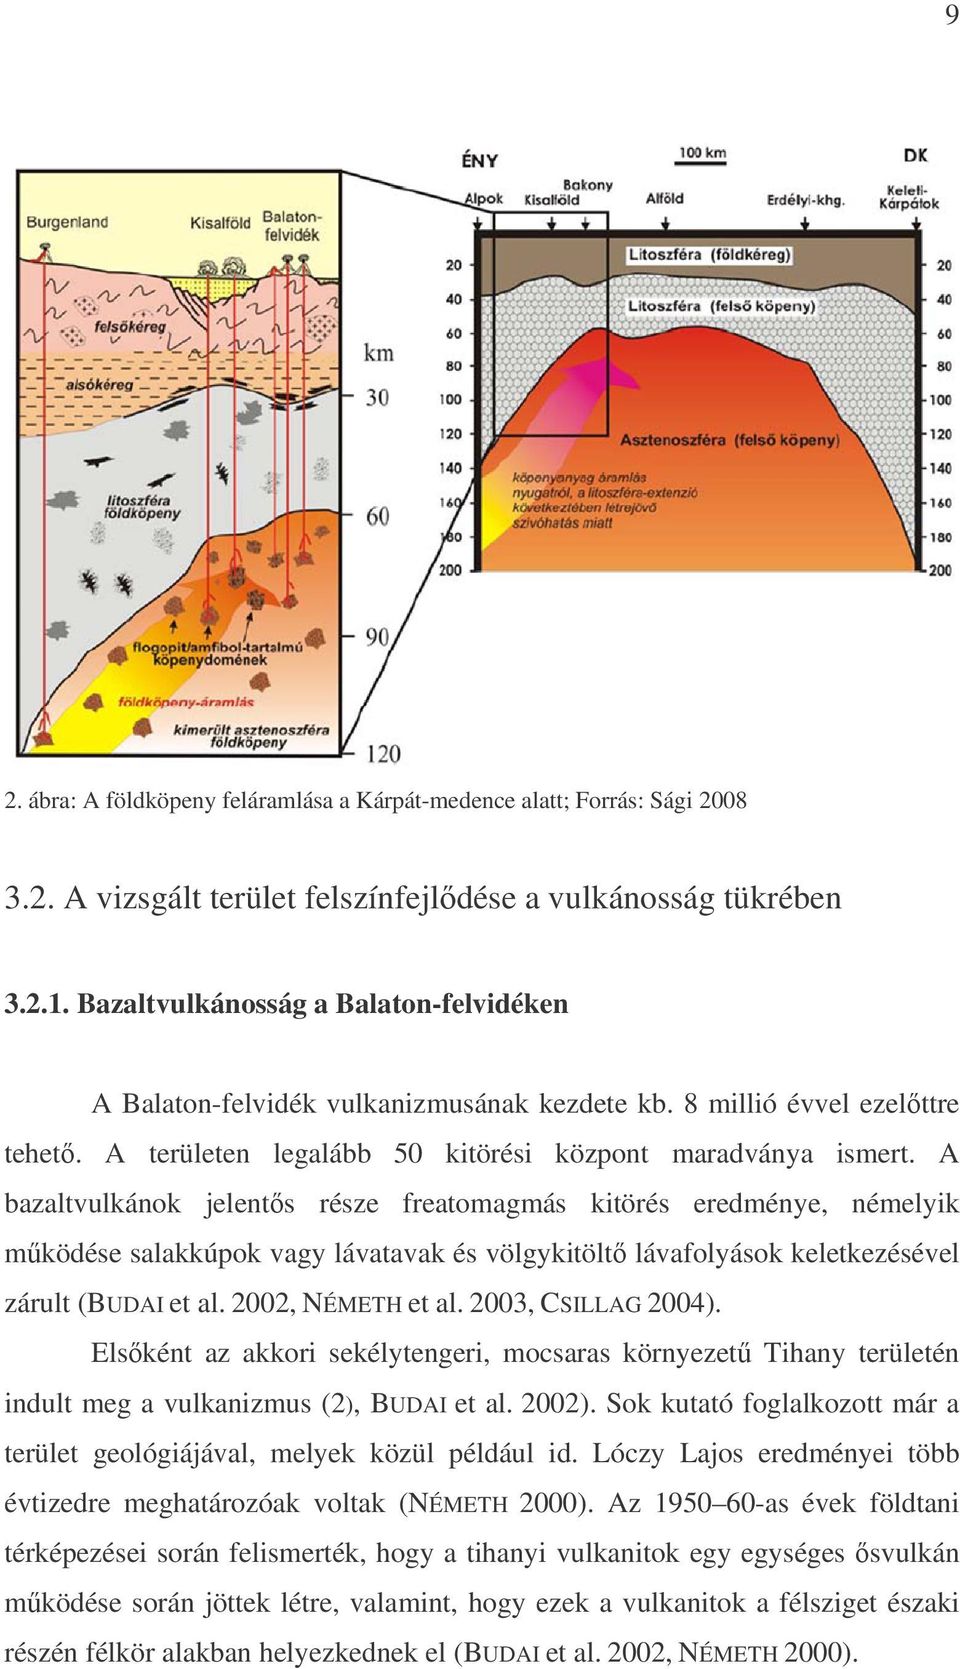 A bazaltvulkánok jelent s része freatomagmás kitörés eredménye, némelyik m ködése salakkúpok vagy lávatavak és völgykitölt lávafolyások keletkezésével zárult (BUDAI et al. 2002, NÉMETH et al.